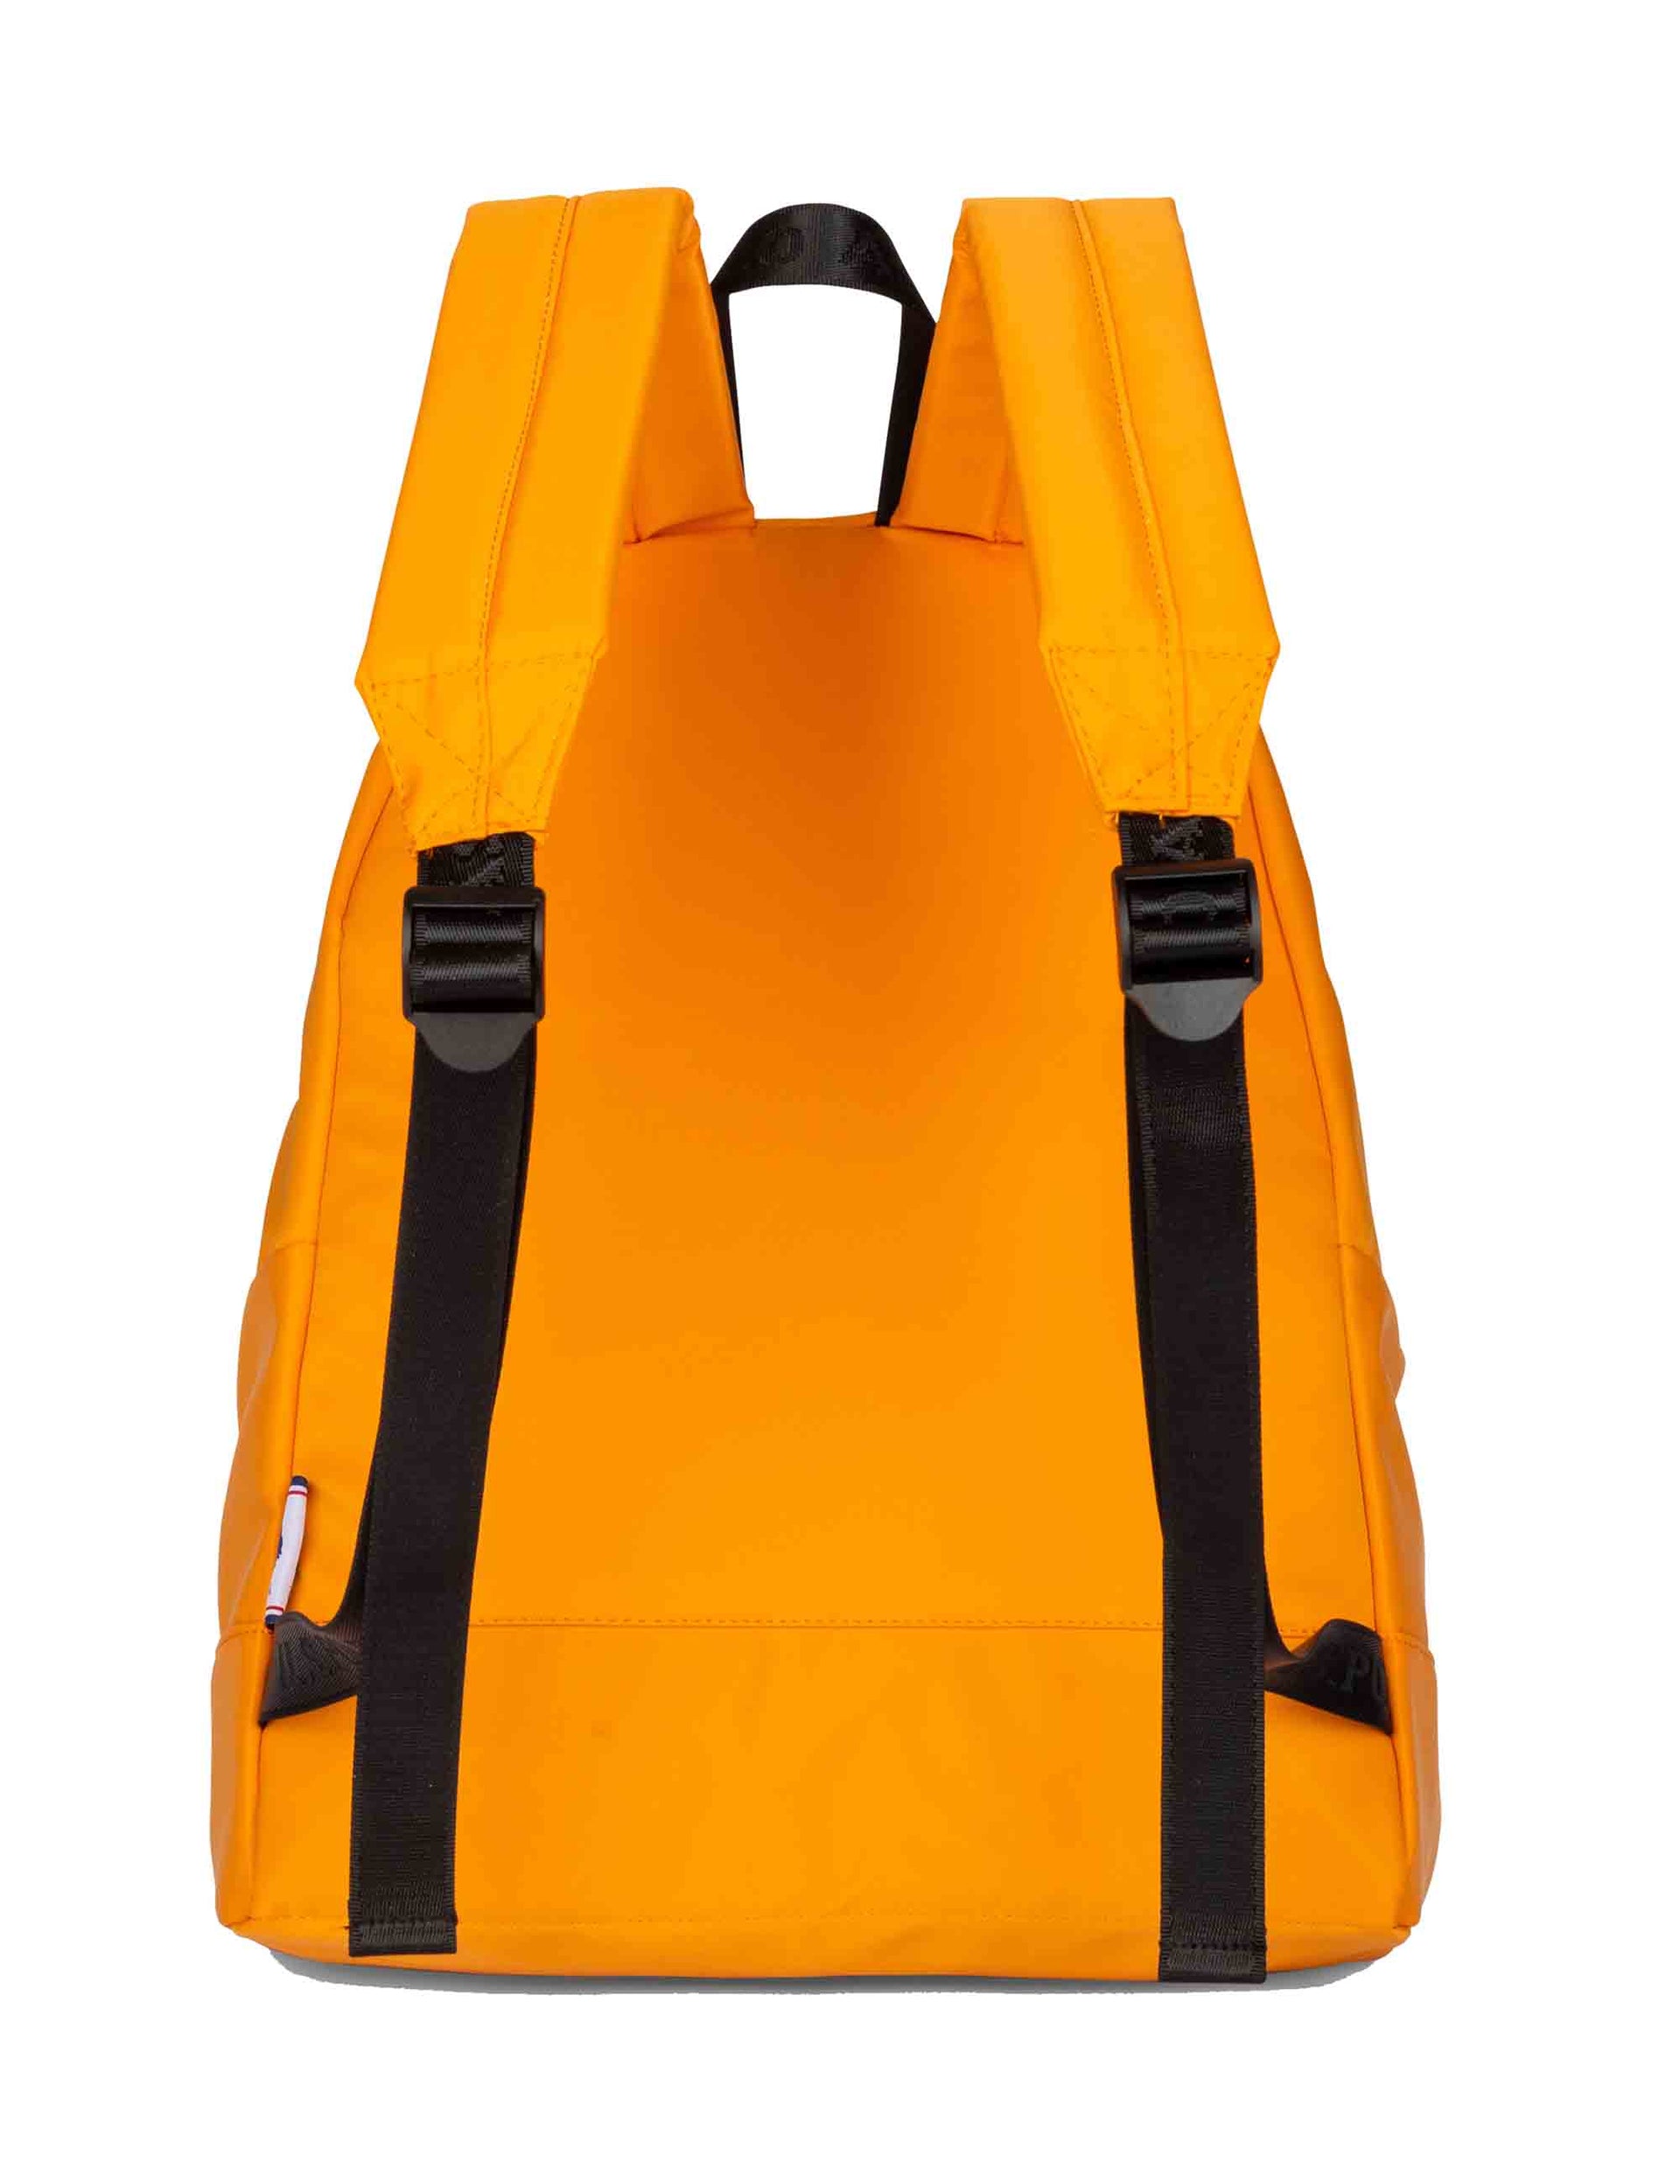 Bigfork men's backpacks in orange nylon